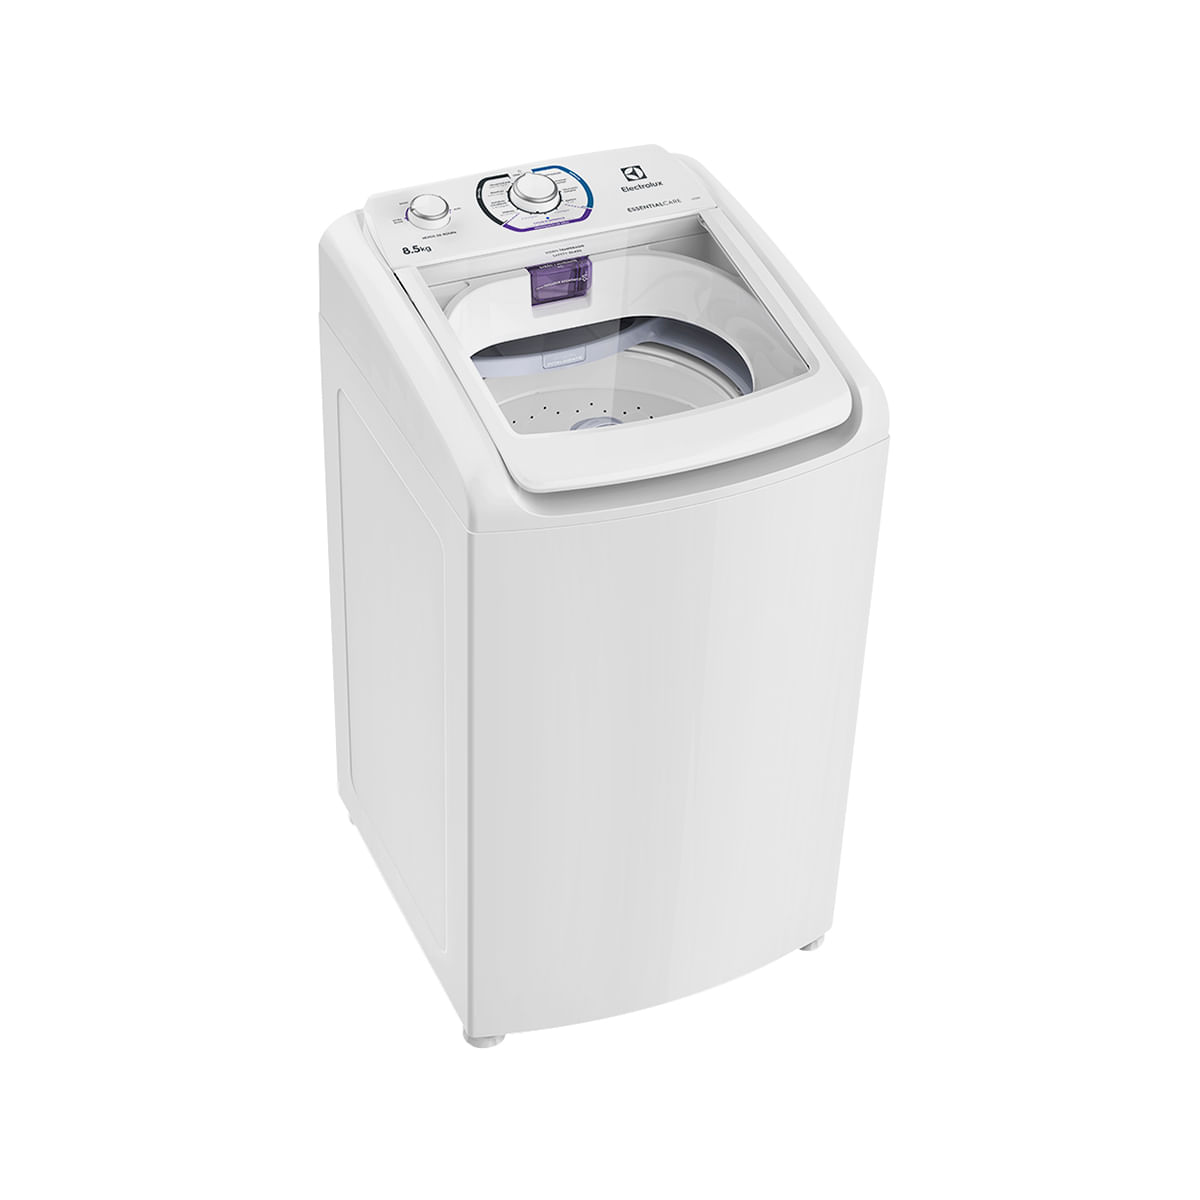 Máquina de Lavar Roupas Electrolux 8,5 kg Branca LES09 110 volts lateral esquerda